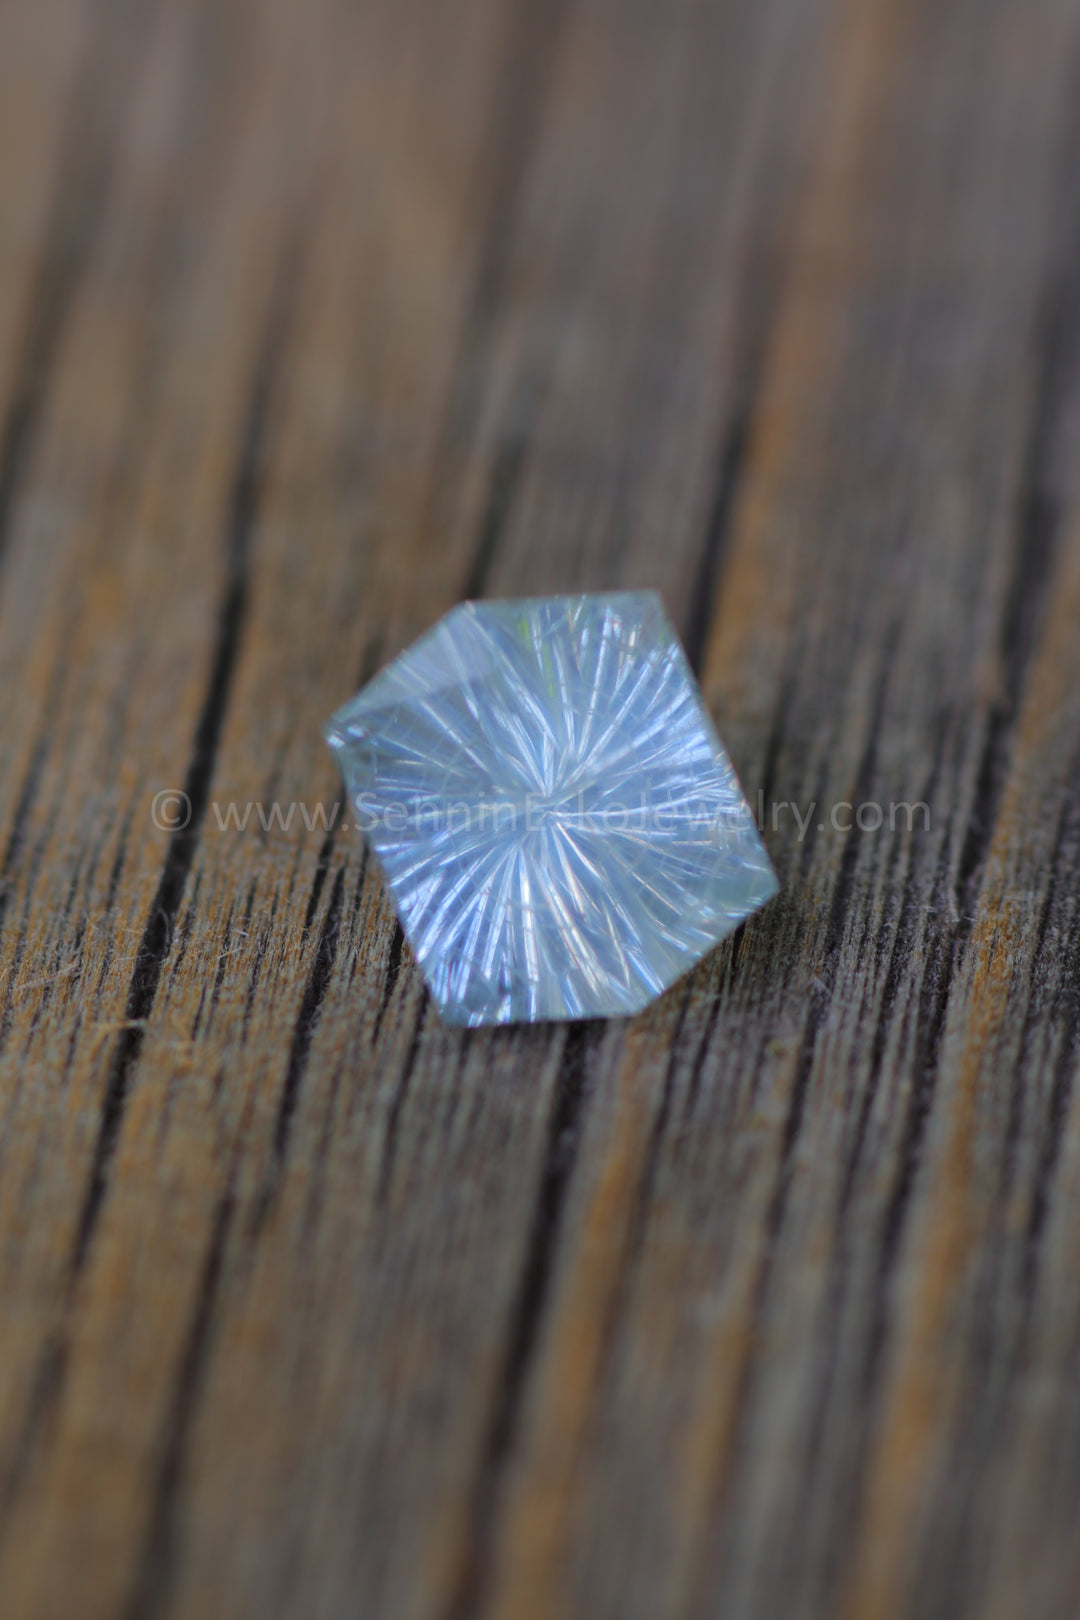 1.6 Carat Opalescent  Silver Sapphire Hexagon - 7.3x6.4mm - Galaxy Cut